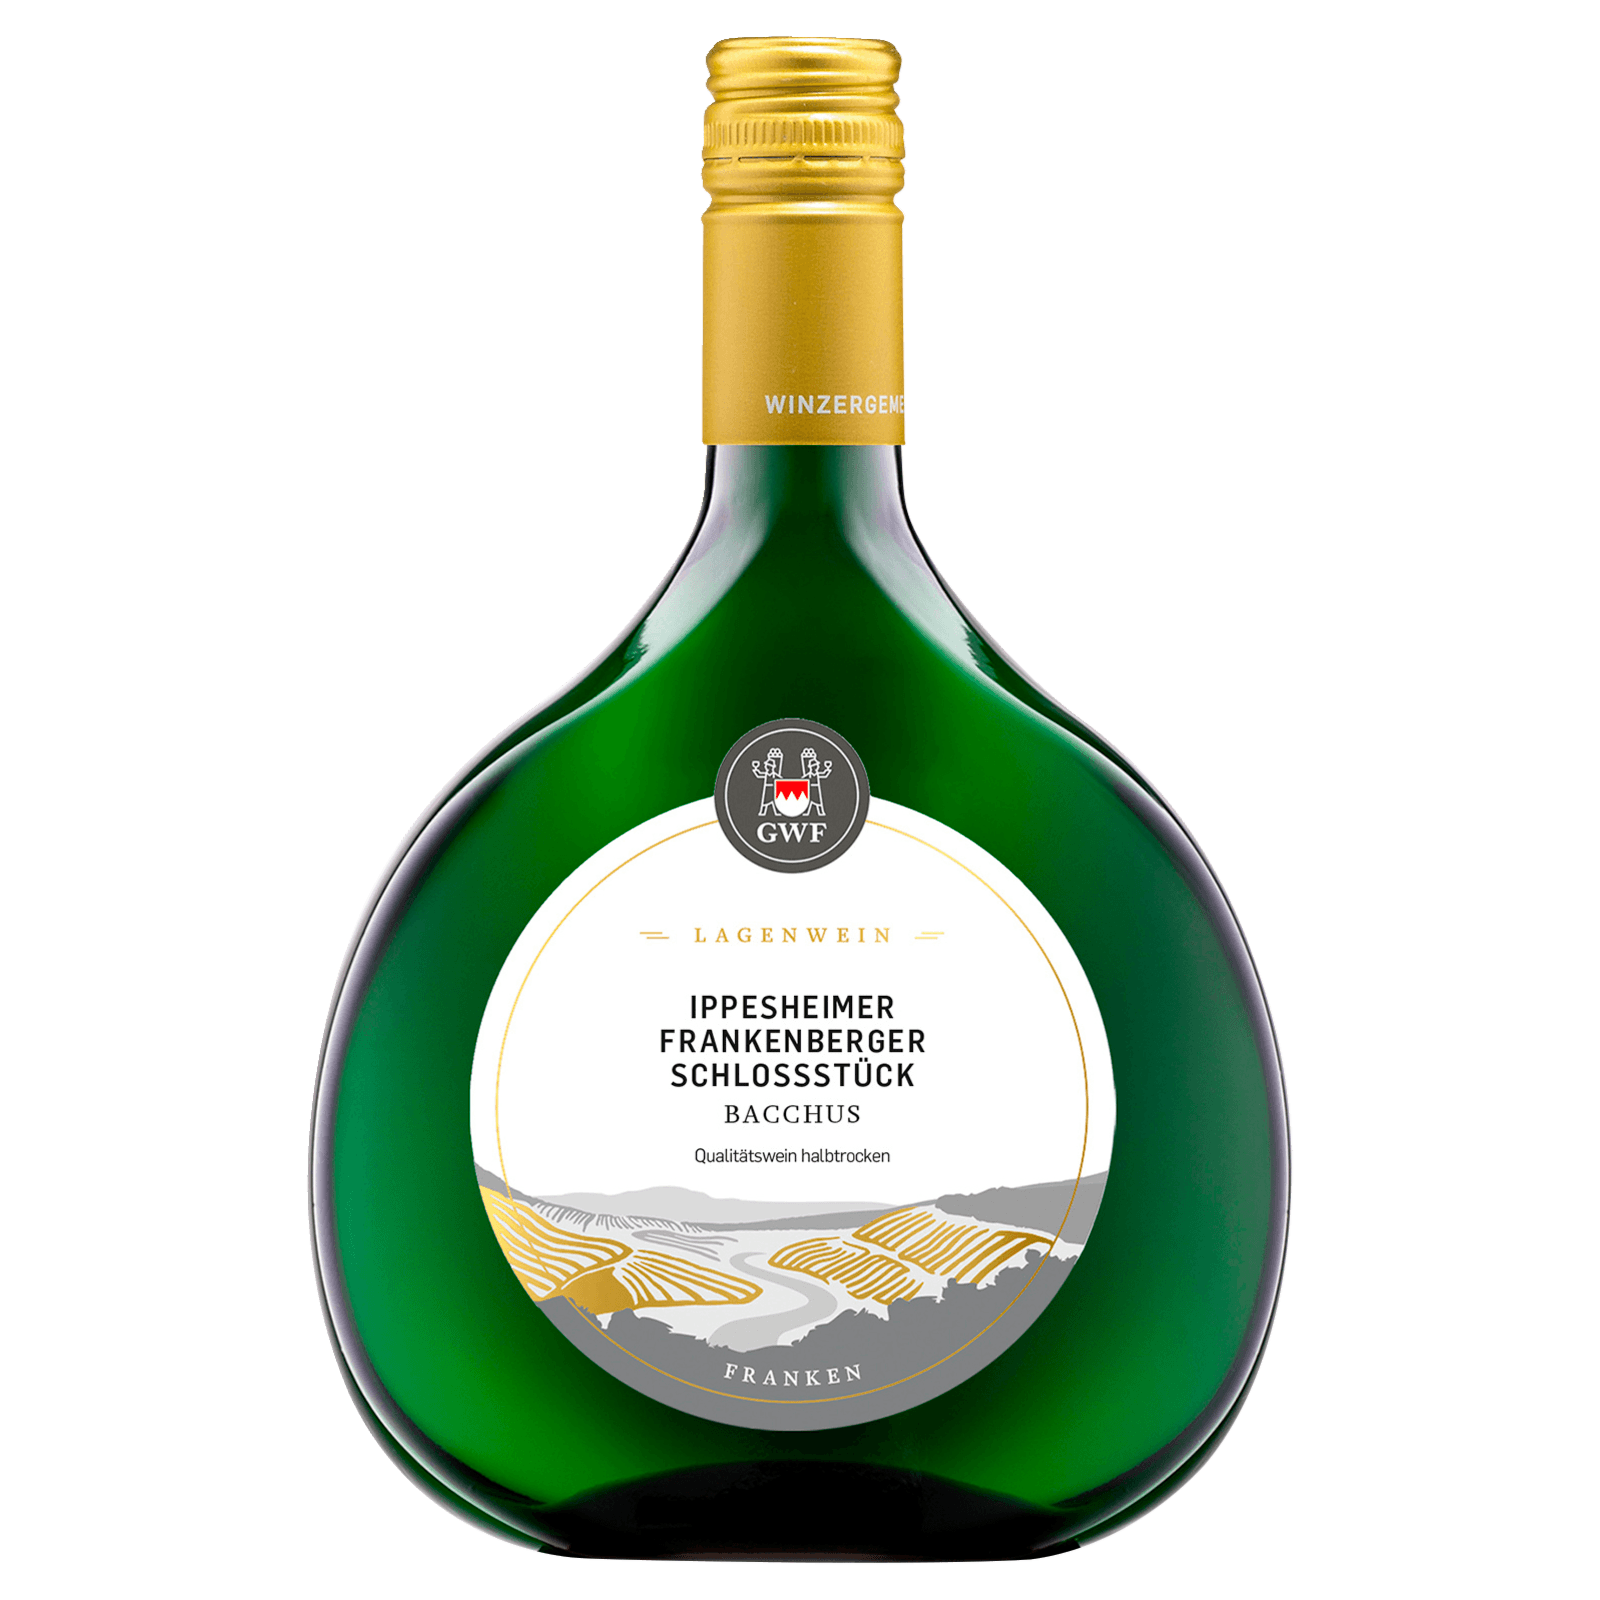 Weißwein Bacchus Ippesheimer Frankenberger bestellen! bei halbtrocken Schlossstück QbA REWE GWF 0,75l online